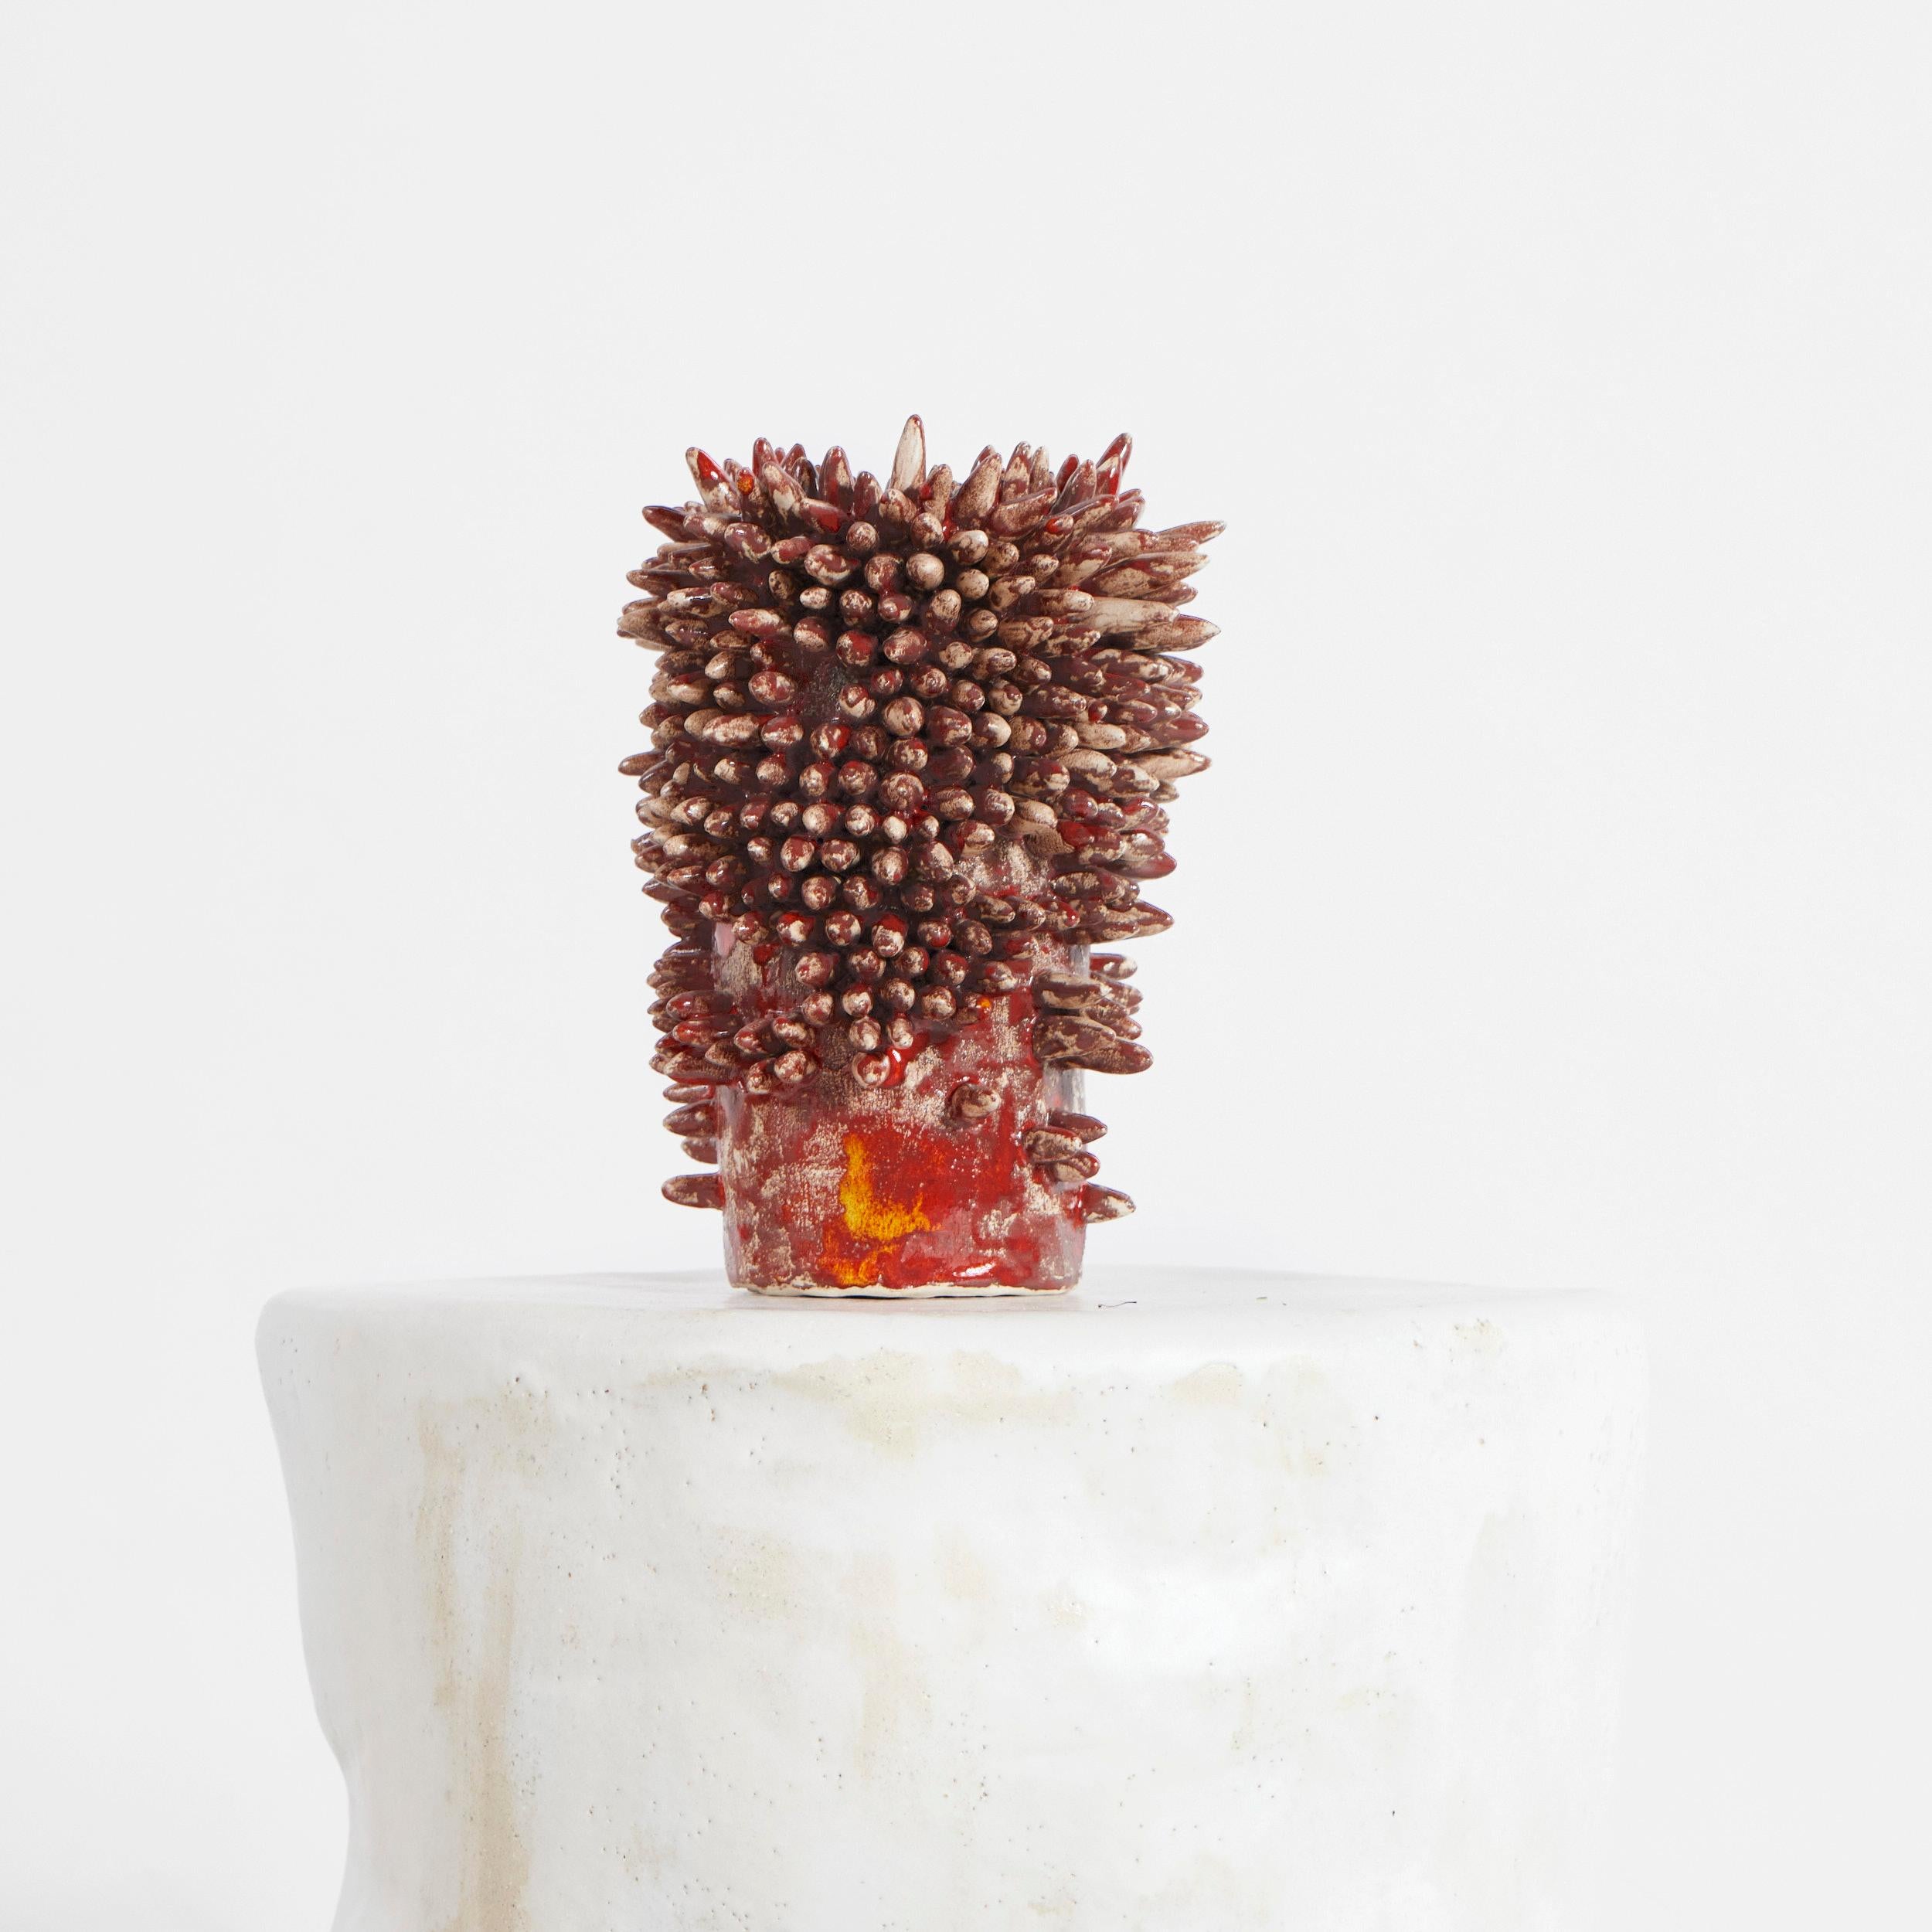 Appuntito-Vase von Projekt 213A
Abmessungen: B17 x T17 x H26 cm
MATERIALIEN: Keramik

Jede ist individuell, die Hand des Keramikers, die Glut des Brennofens, das Eintauchen der Glasur. Die handwerklich hergestellten Keramiken bleiben ihren Wurzeln